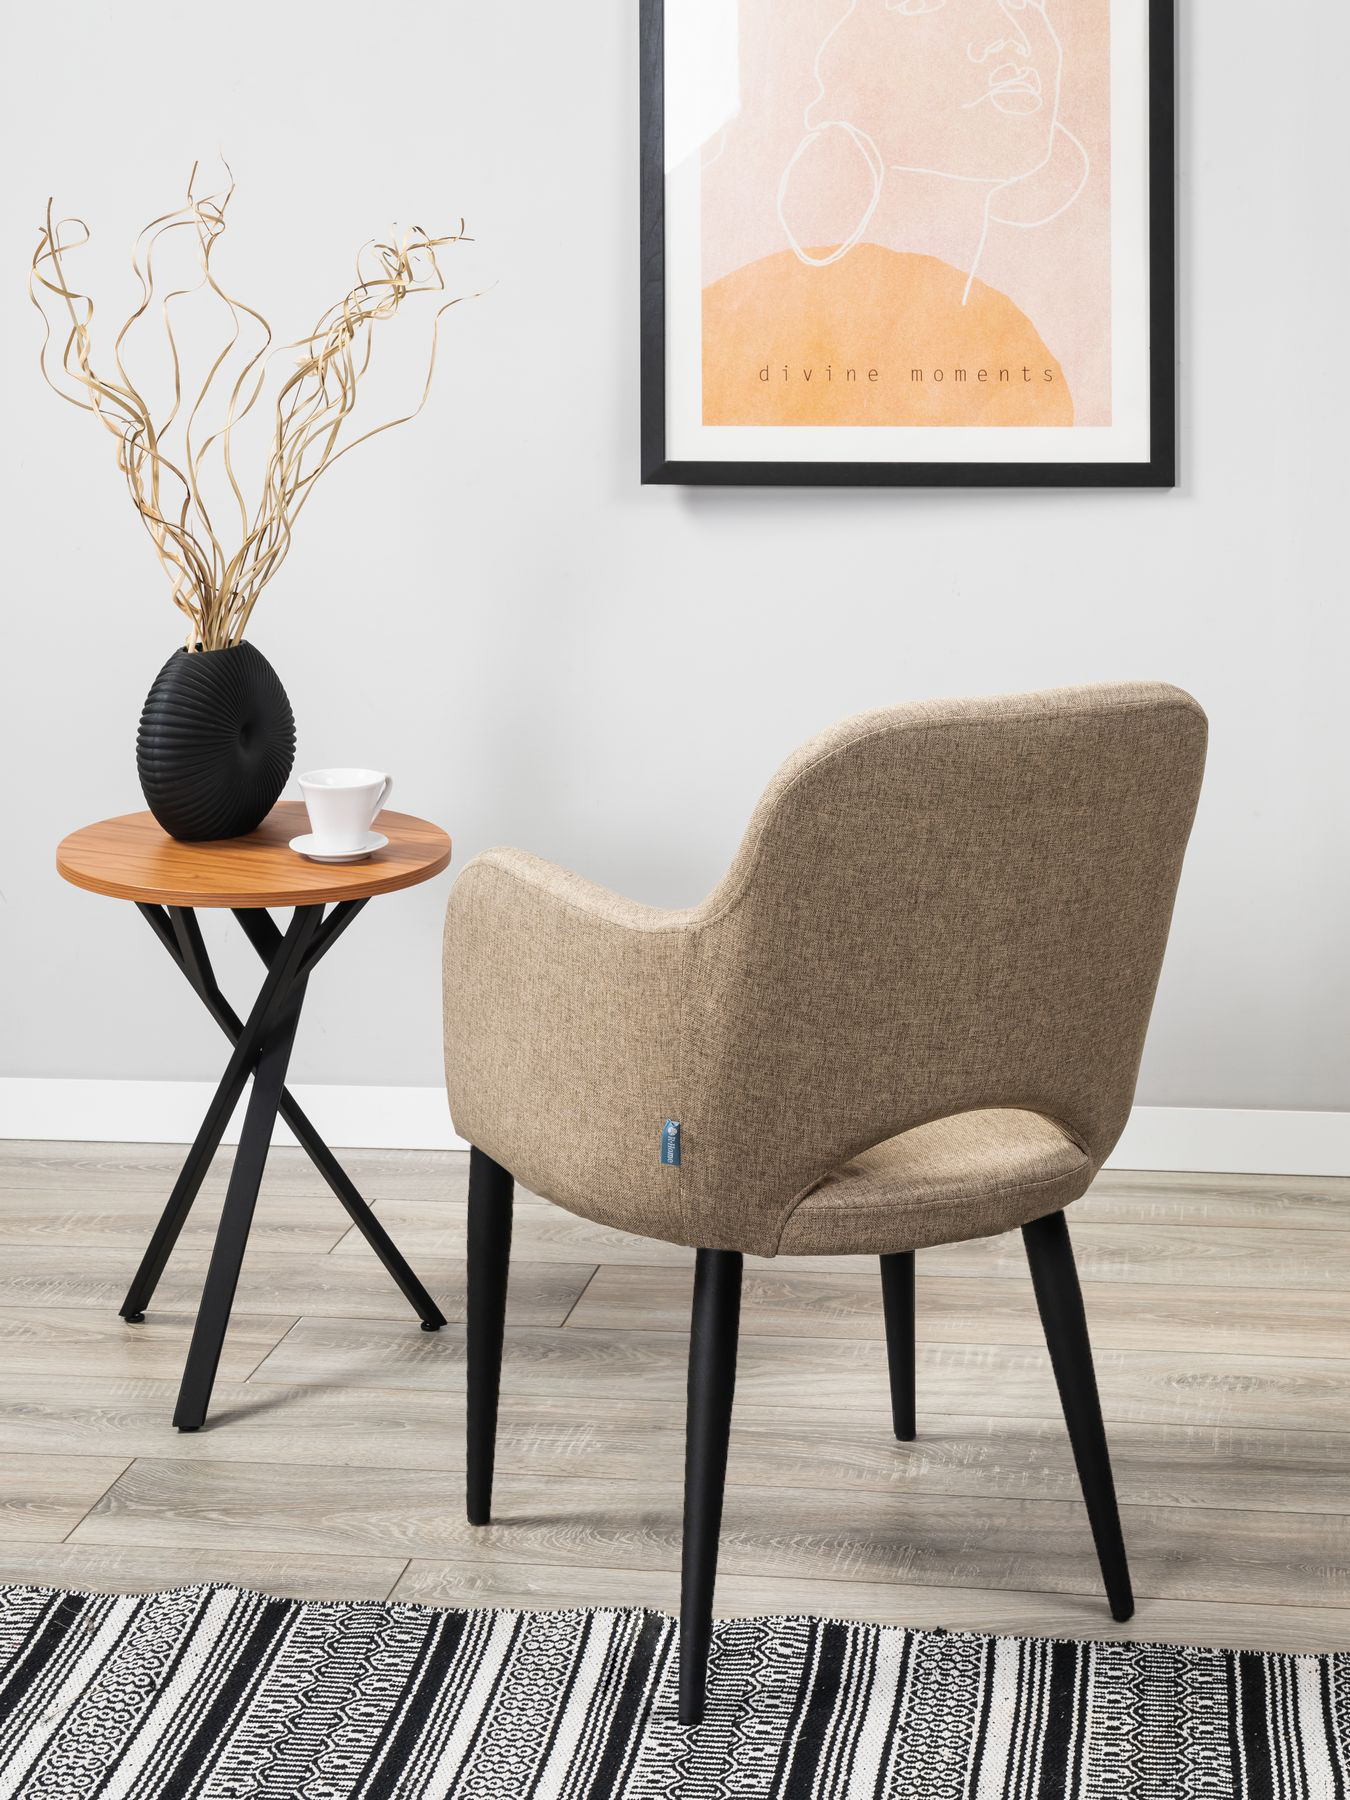 Кресло R-Home Ledger Сканди, размер 56.5x60.5x87.5 см, цвет: Браун Чёрн(41012440_БраунЧерн)41012440_БраунЧерн